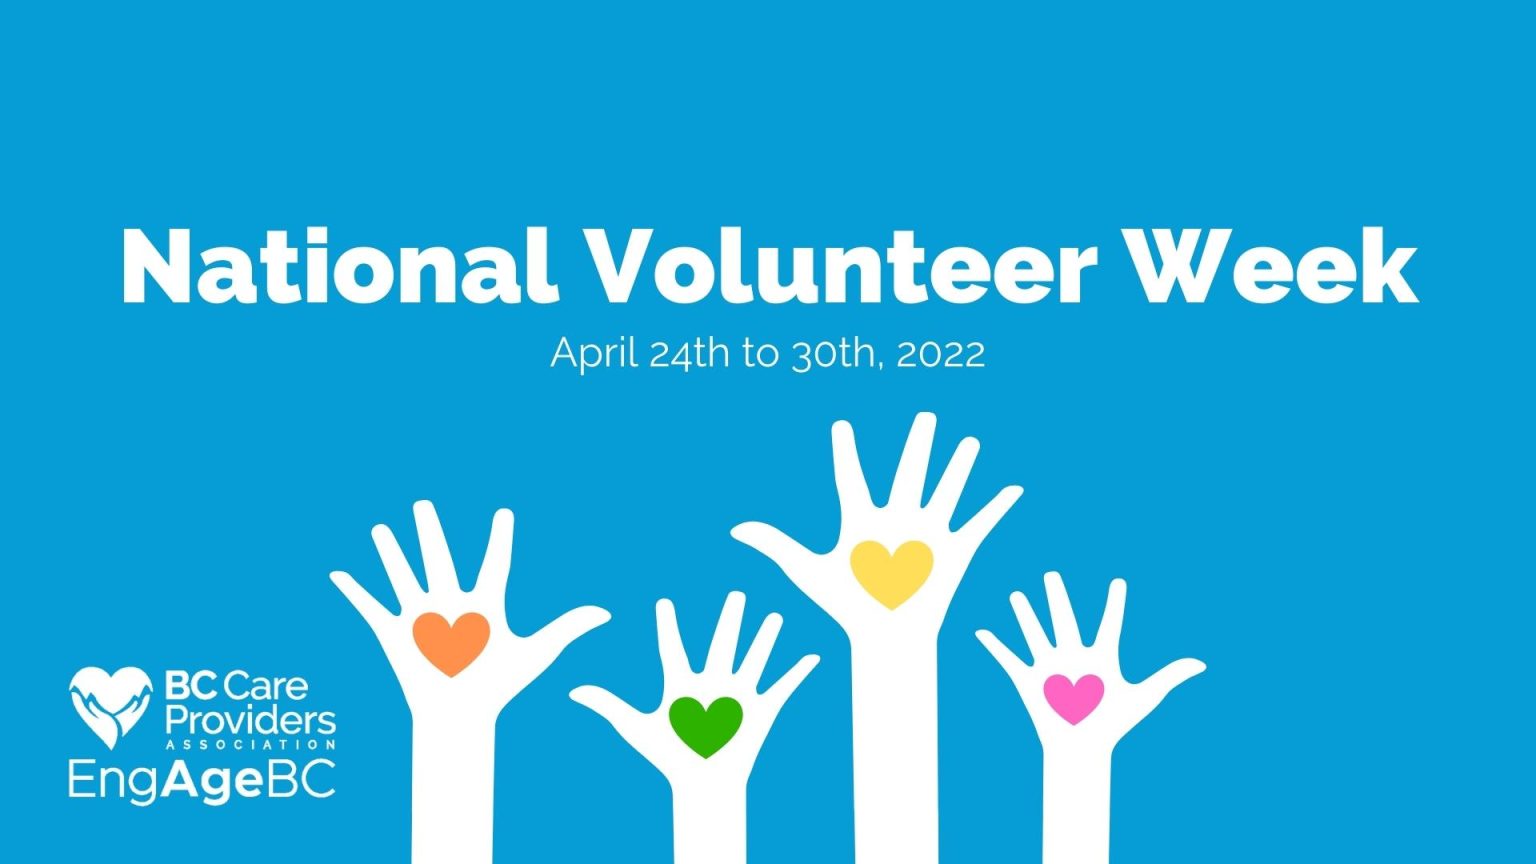 Celebrating the sector’s volunteers during National Volunteer Week